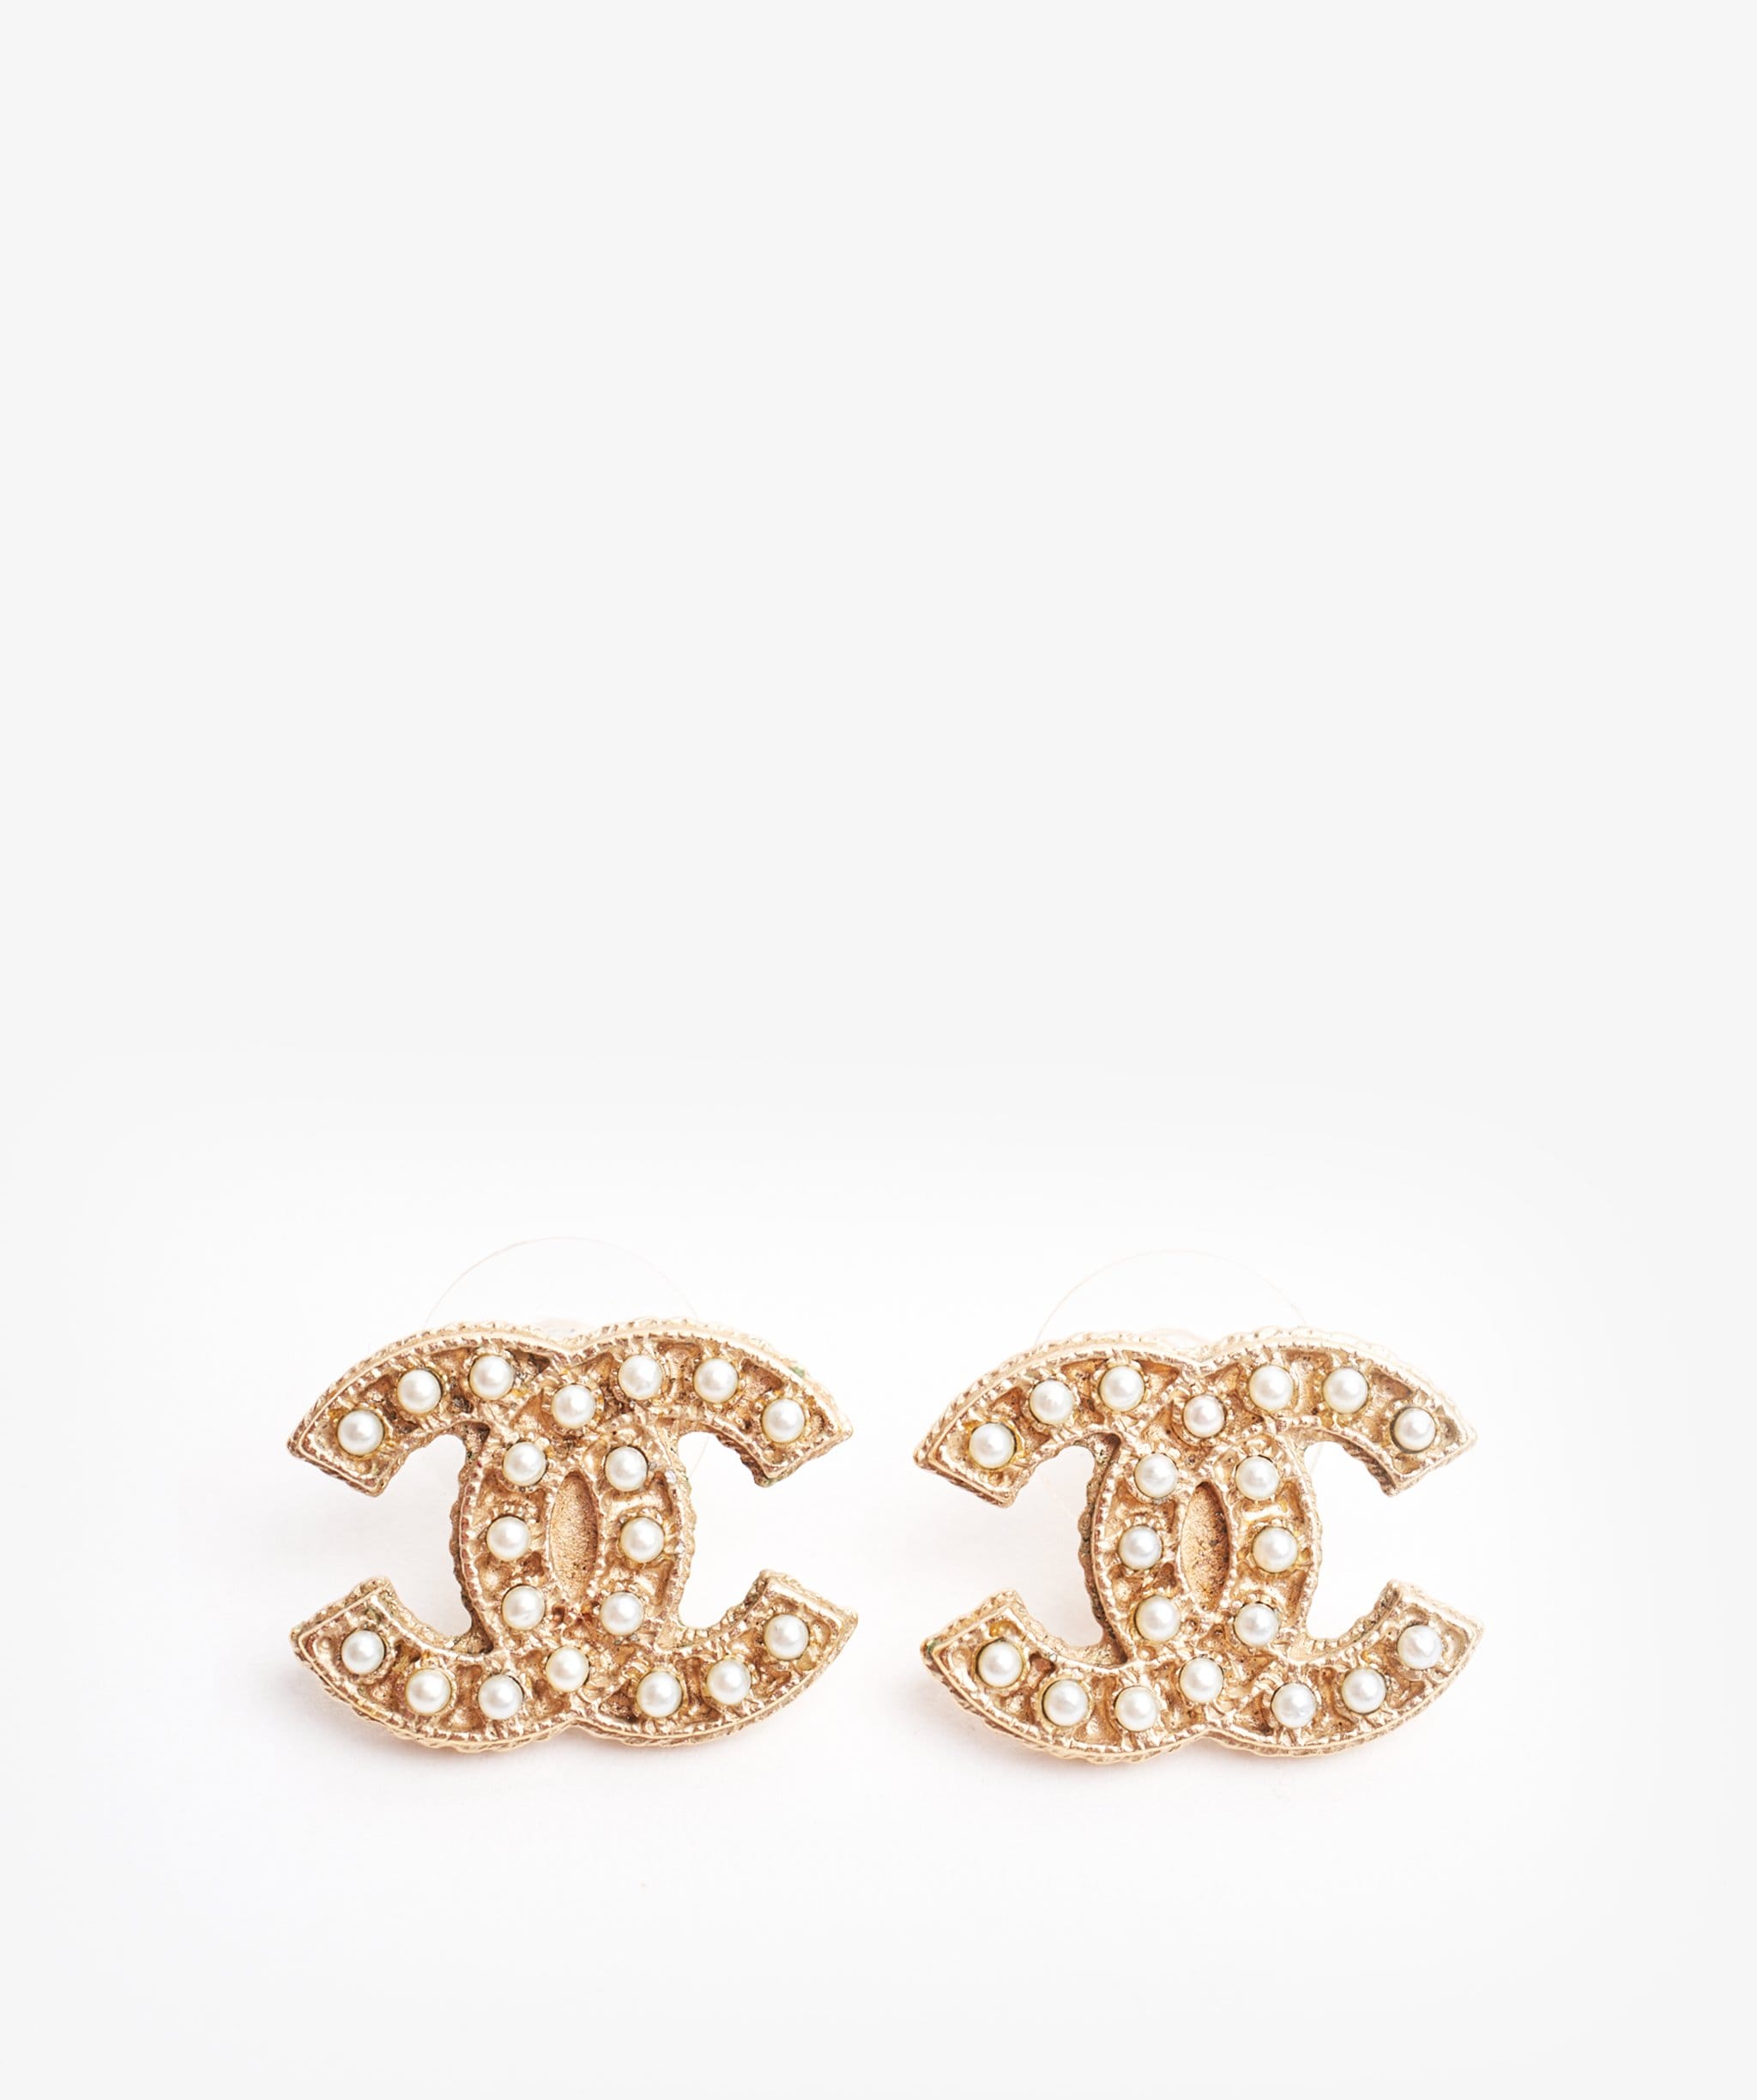 Chanel pearl earrings studs